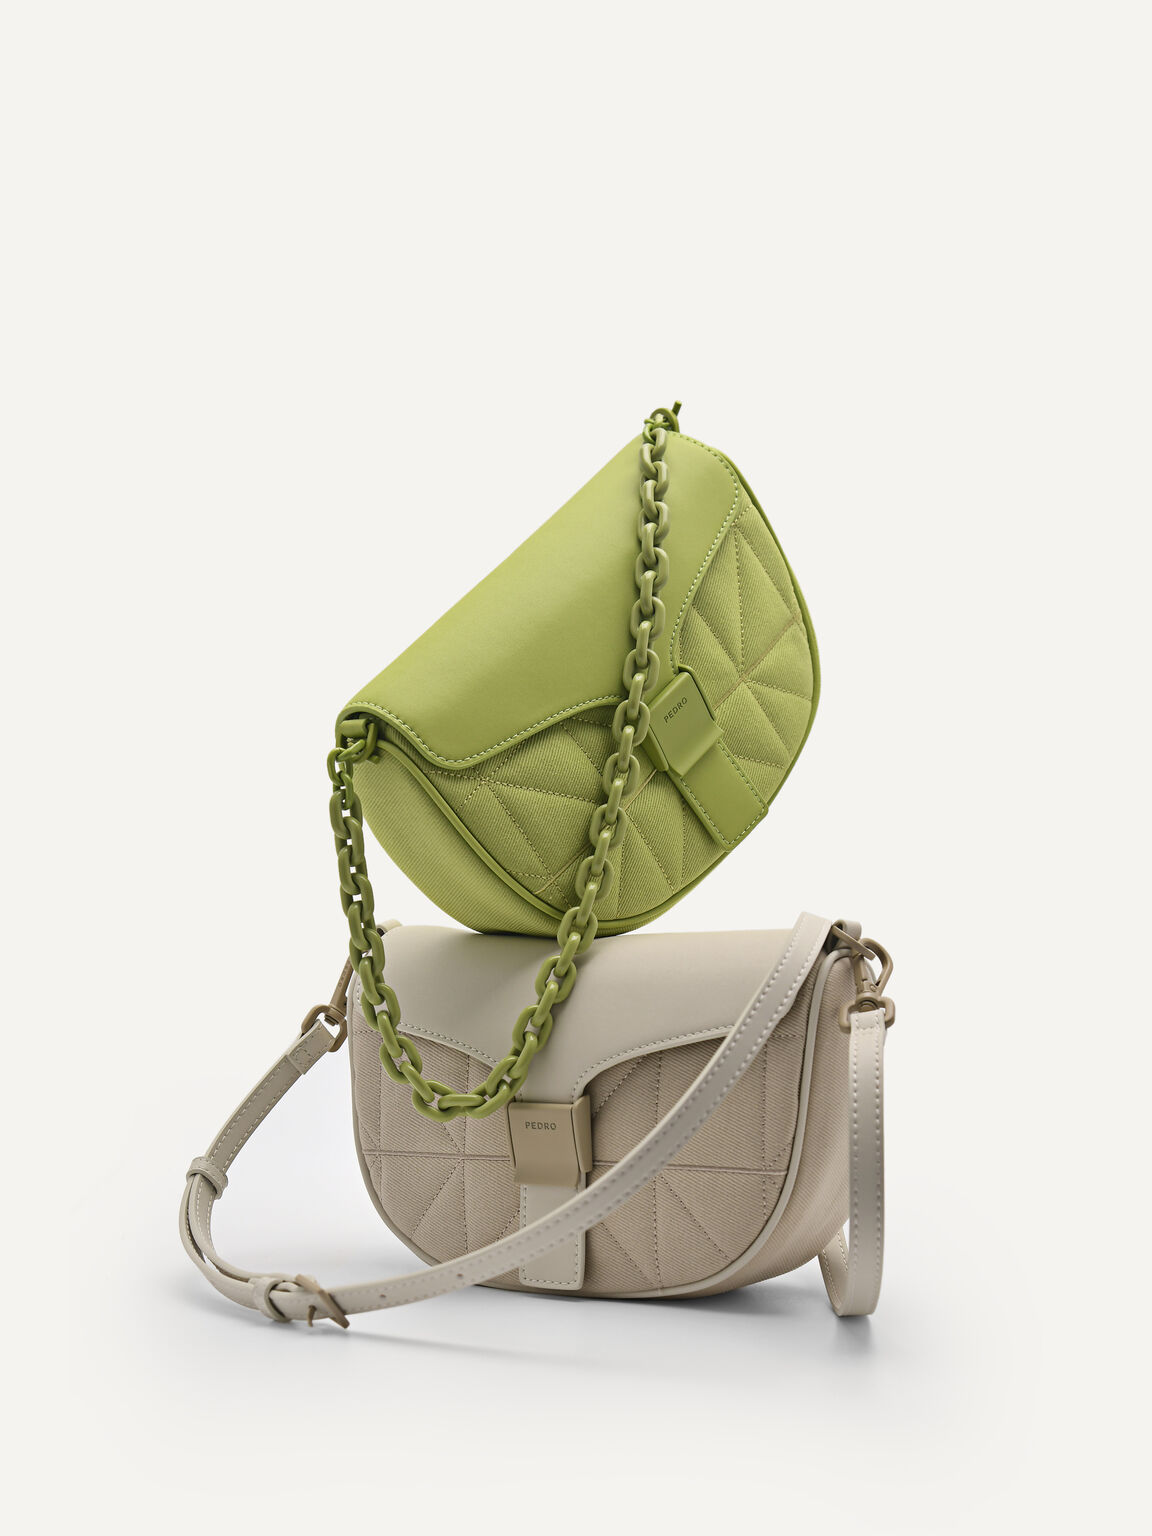 rePEDRO Twill Handbag, Green, hi-res